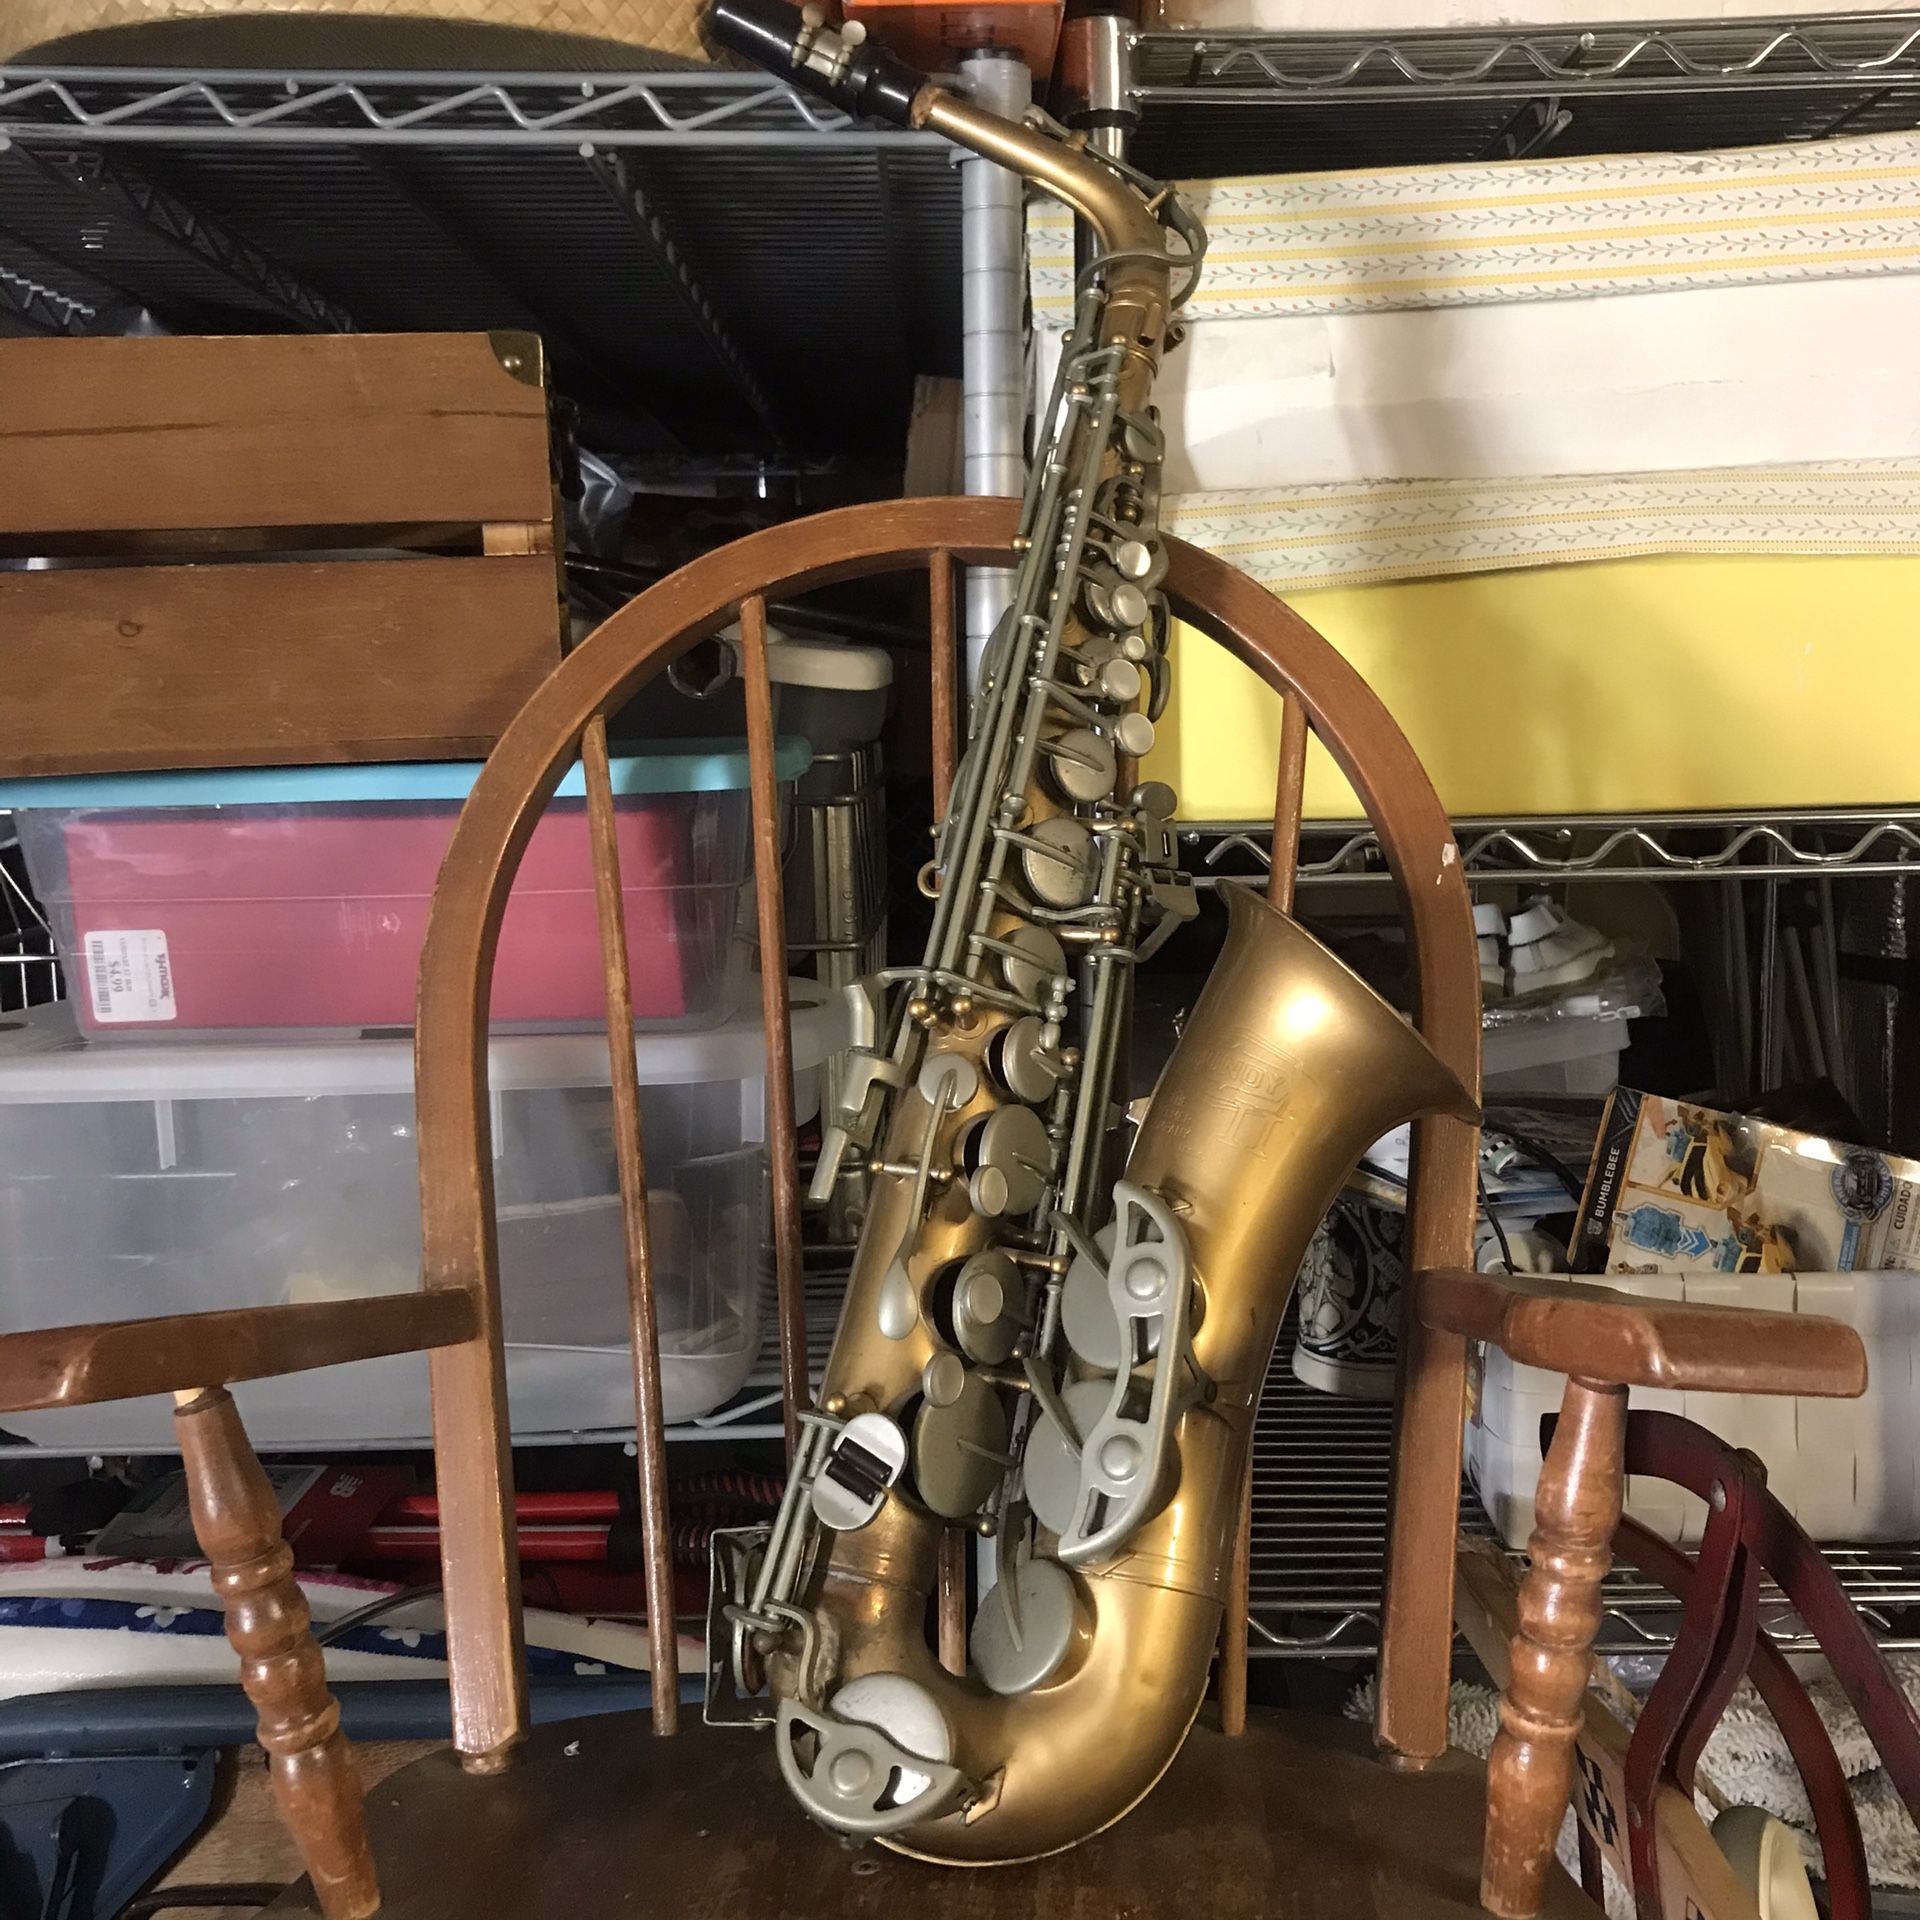 Vintage Bundy Saxophone 🎷 for Repair 🌏